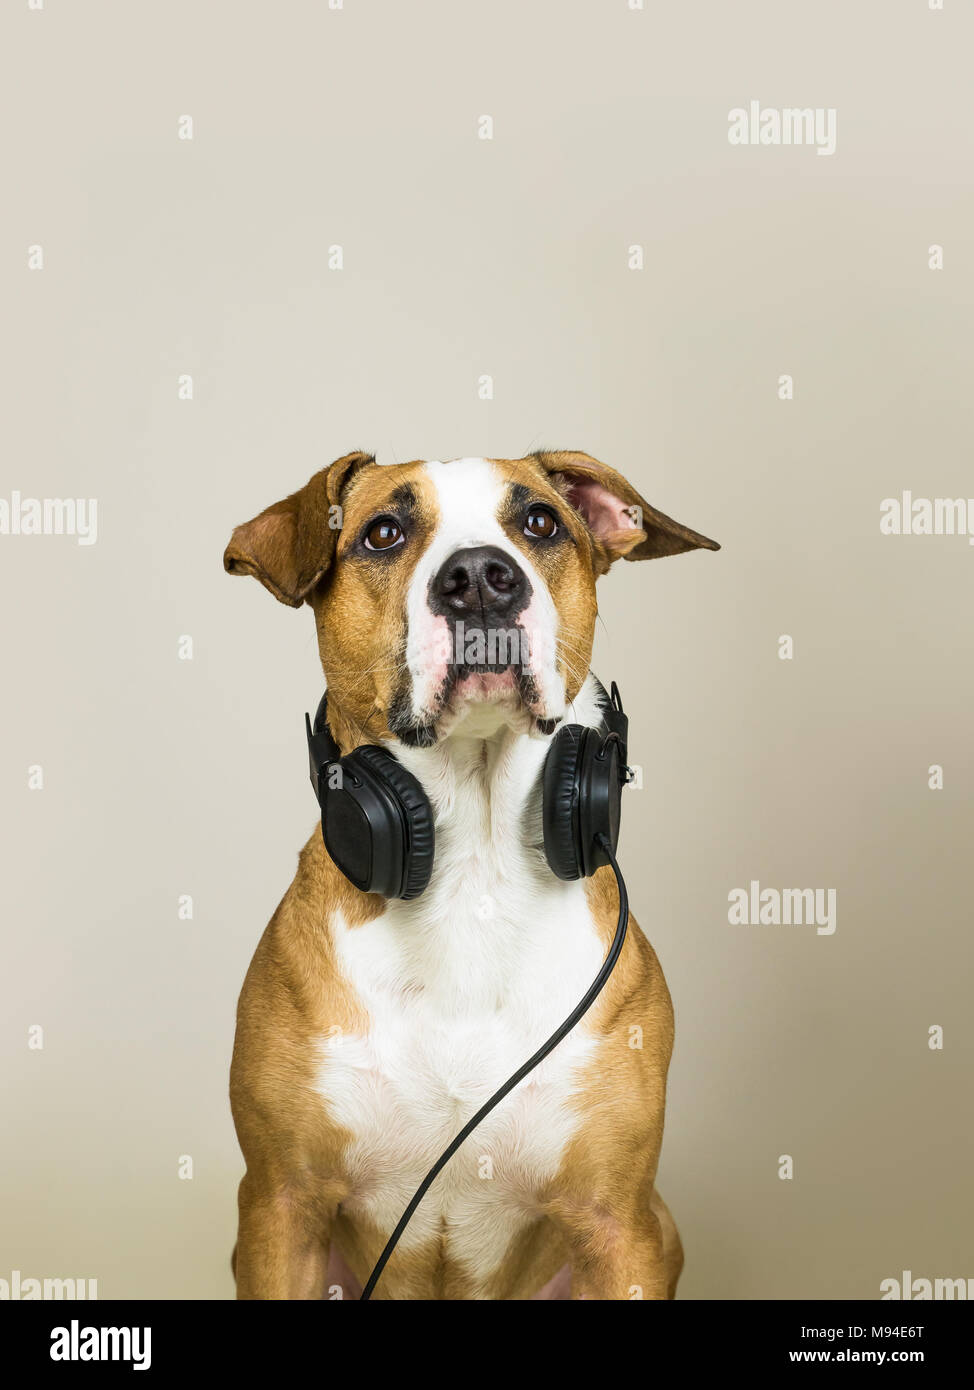 Hund mit headset -Fotos in hoher -Bildmaterial Alamy und – Auflösung